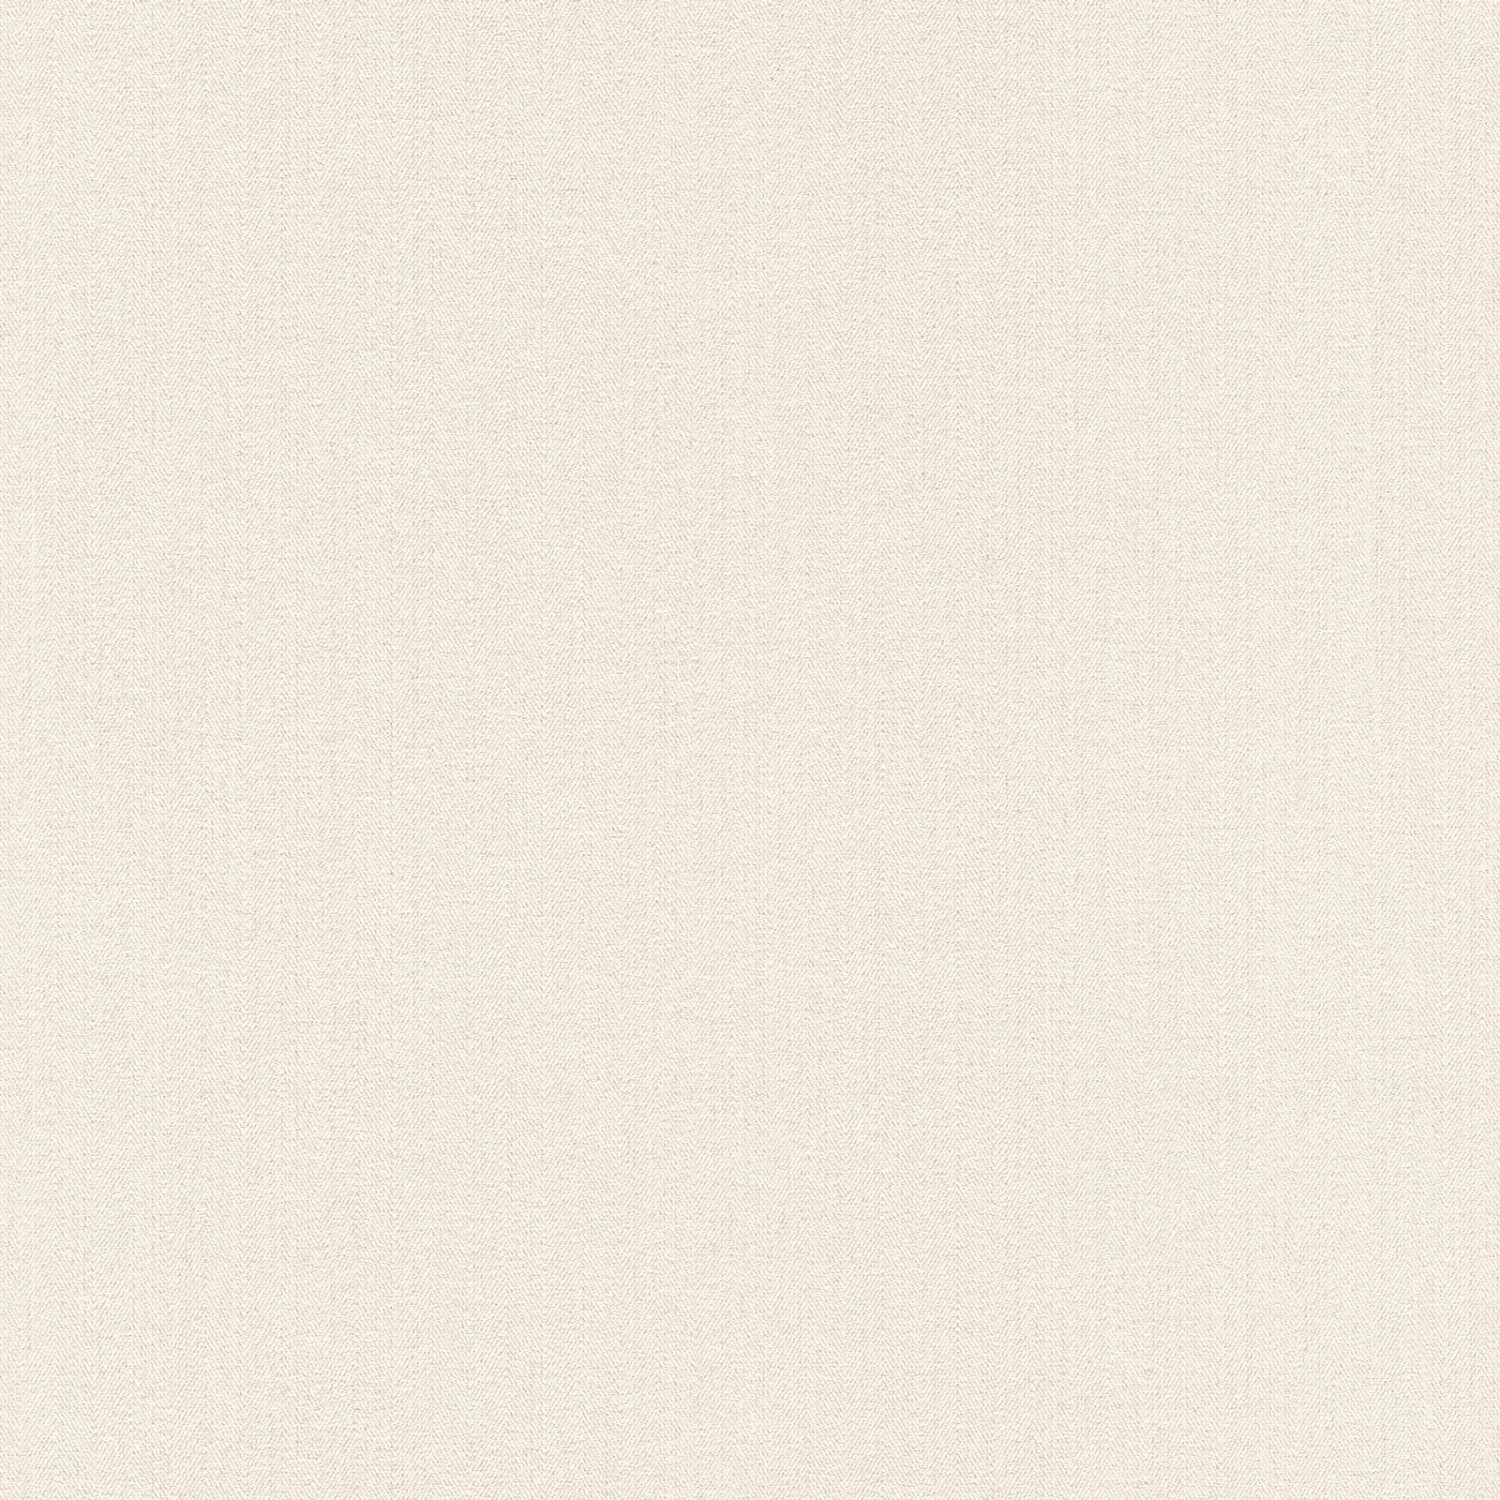 Bricoflor Vlies Unitapete Creme Weiß Nordische Fischgrät Tapete Modern Ideal für Schlafzimmer Einfarbige Vlies Wandtapet